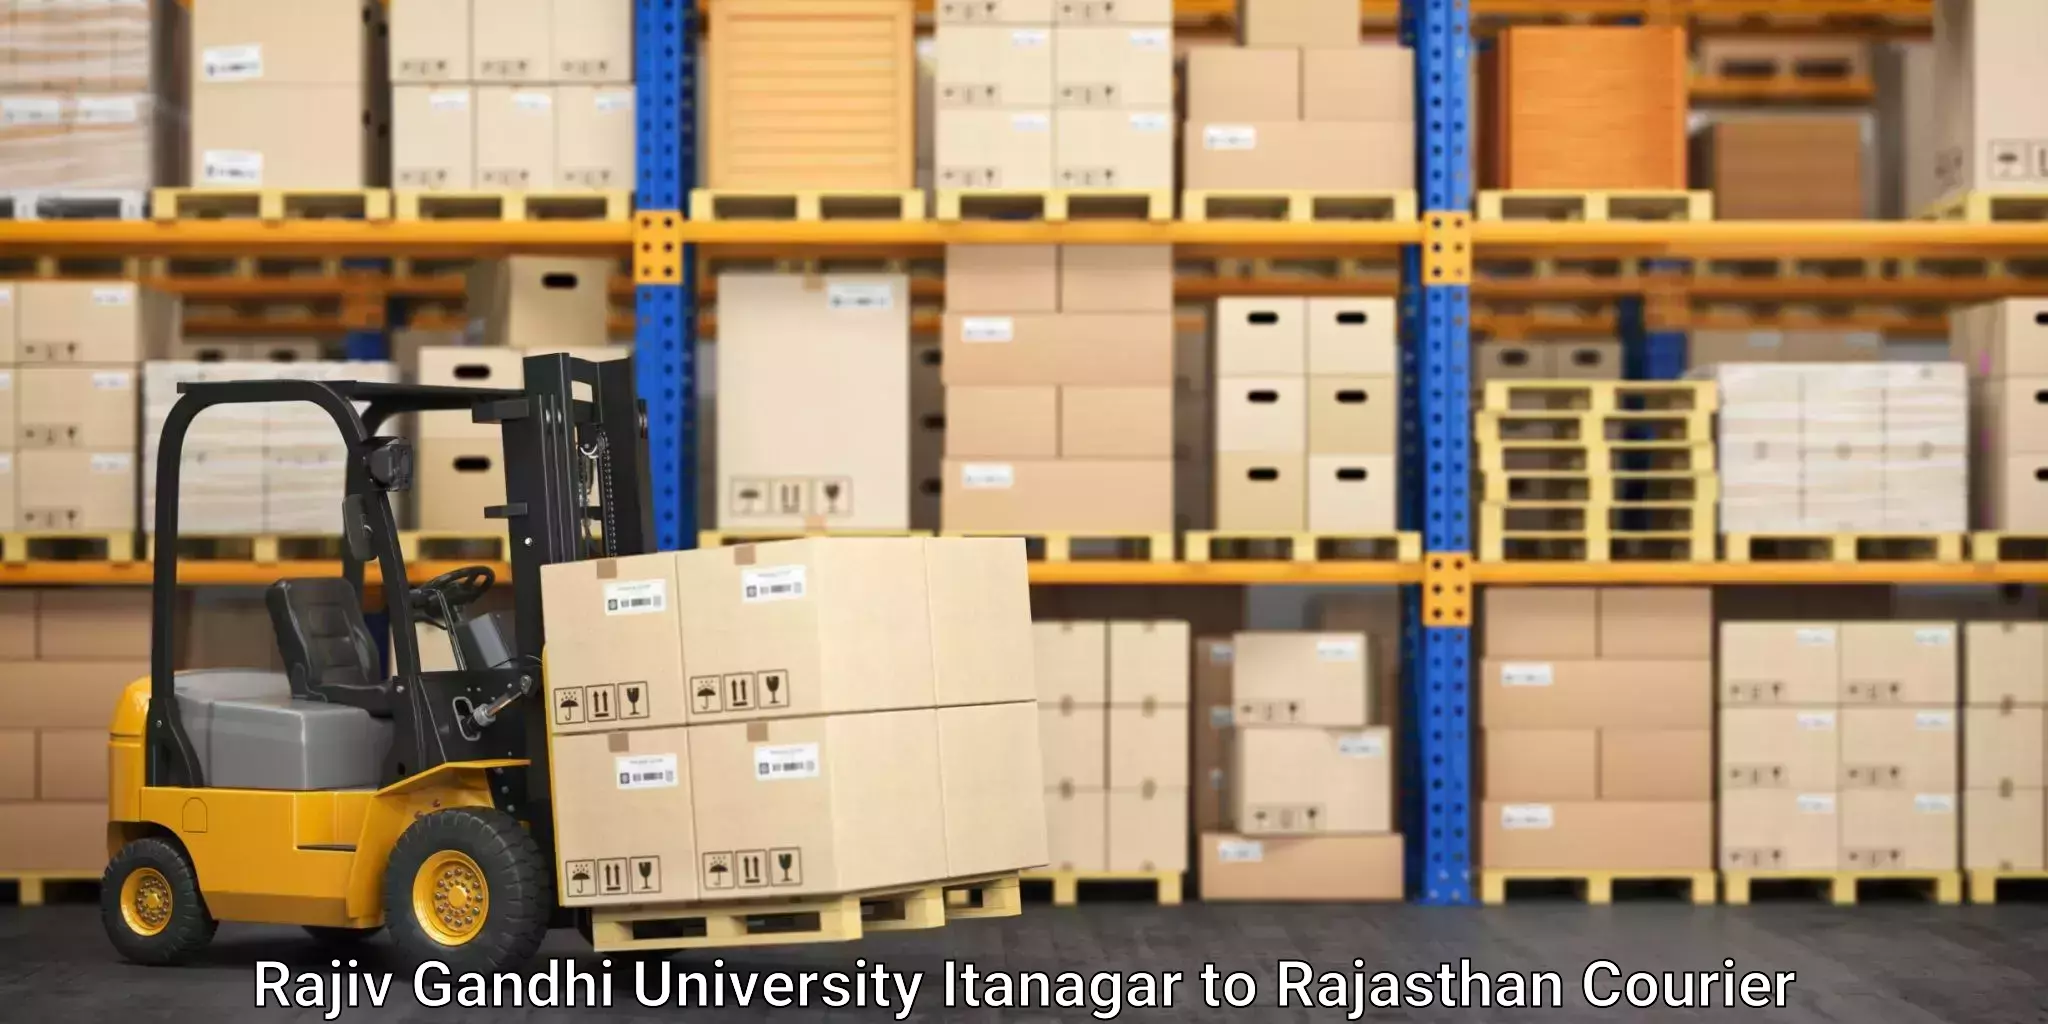 Smart courier technologies Rajiv Gandhi University Itanagar to Rajasthan